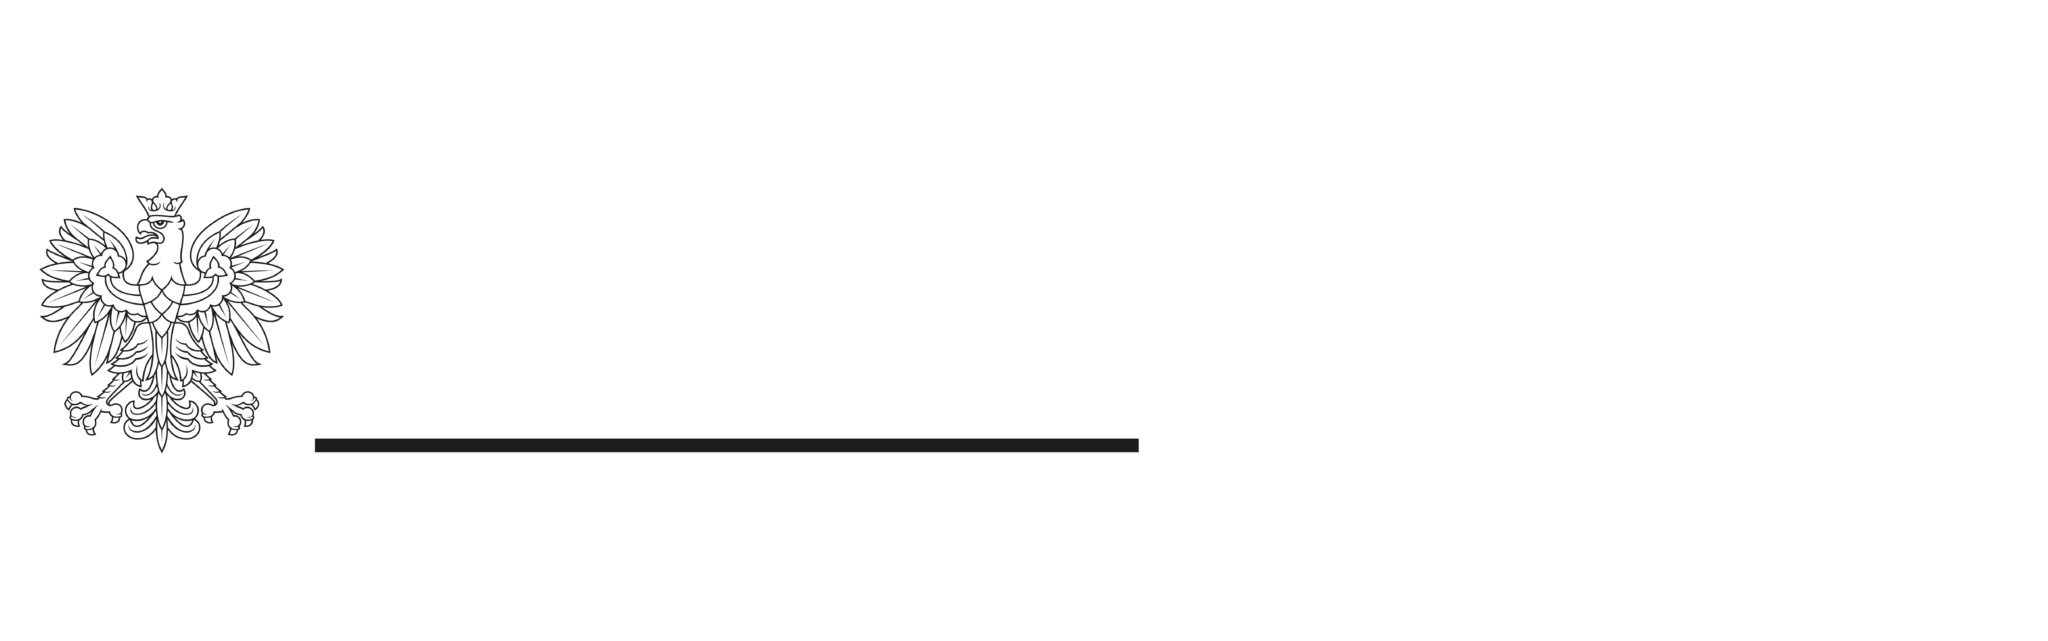 Logotyp Ministerstwa Kultury i Dziedzictwa Narodowego i Narodowego Instytutu Muzyki i Tańca